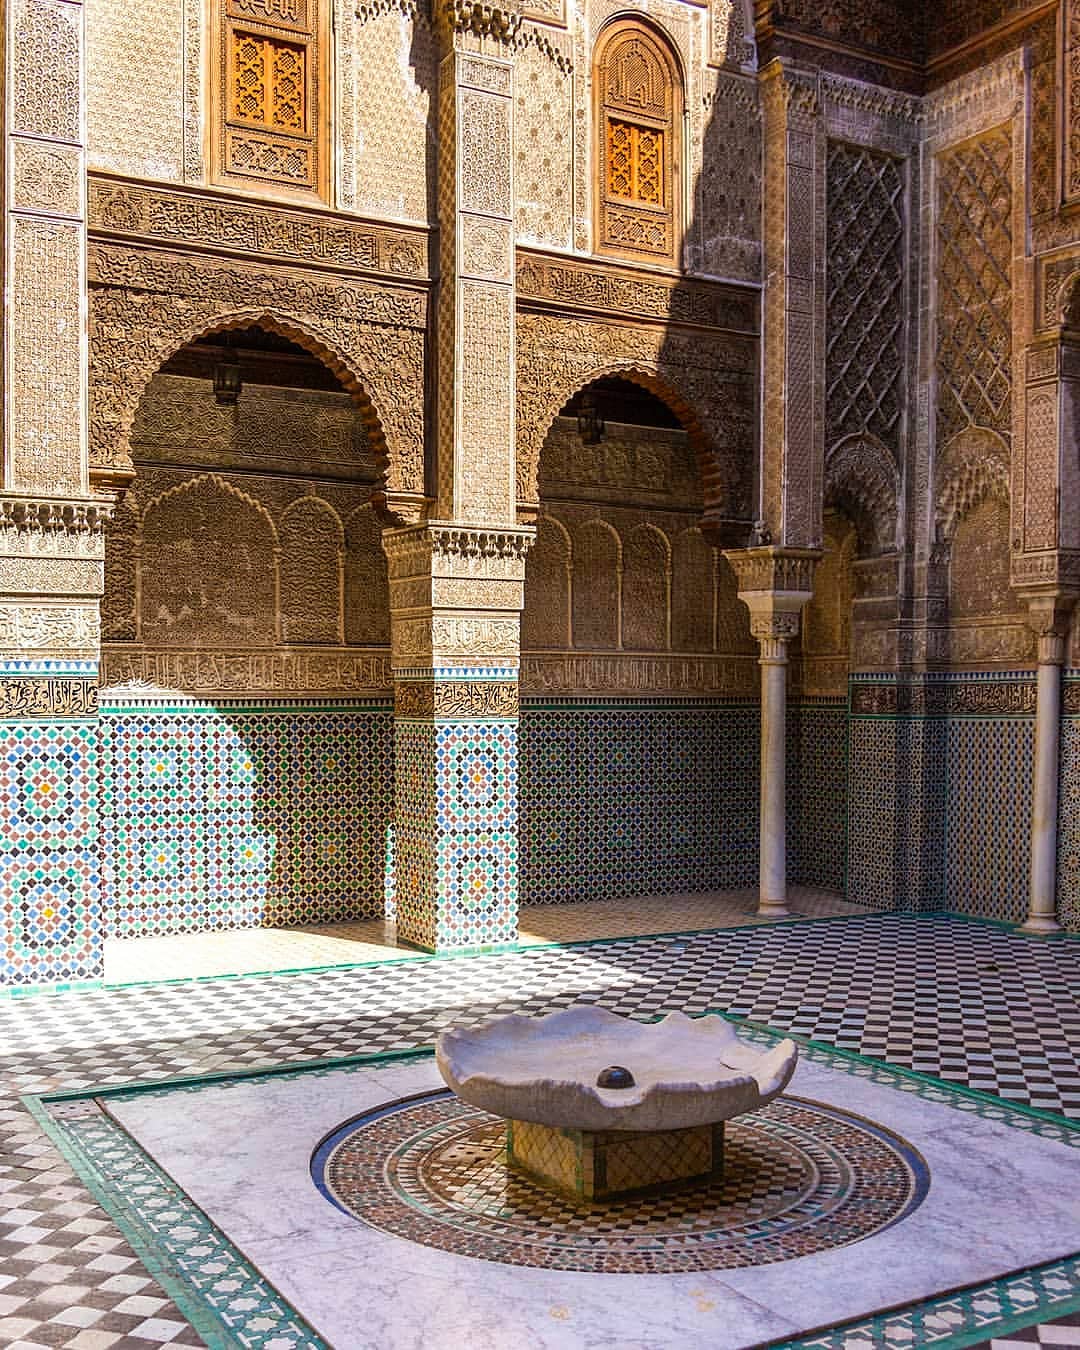 Những bức tường với kiến trúc và hoạ tiết độc đáo tại Fez.